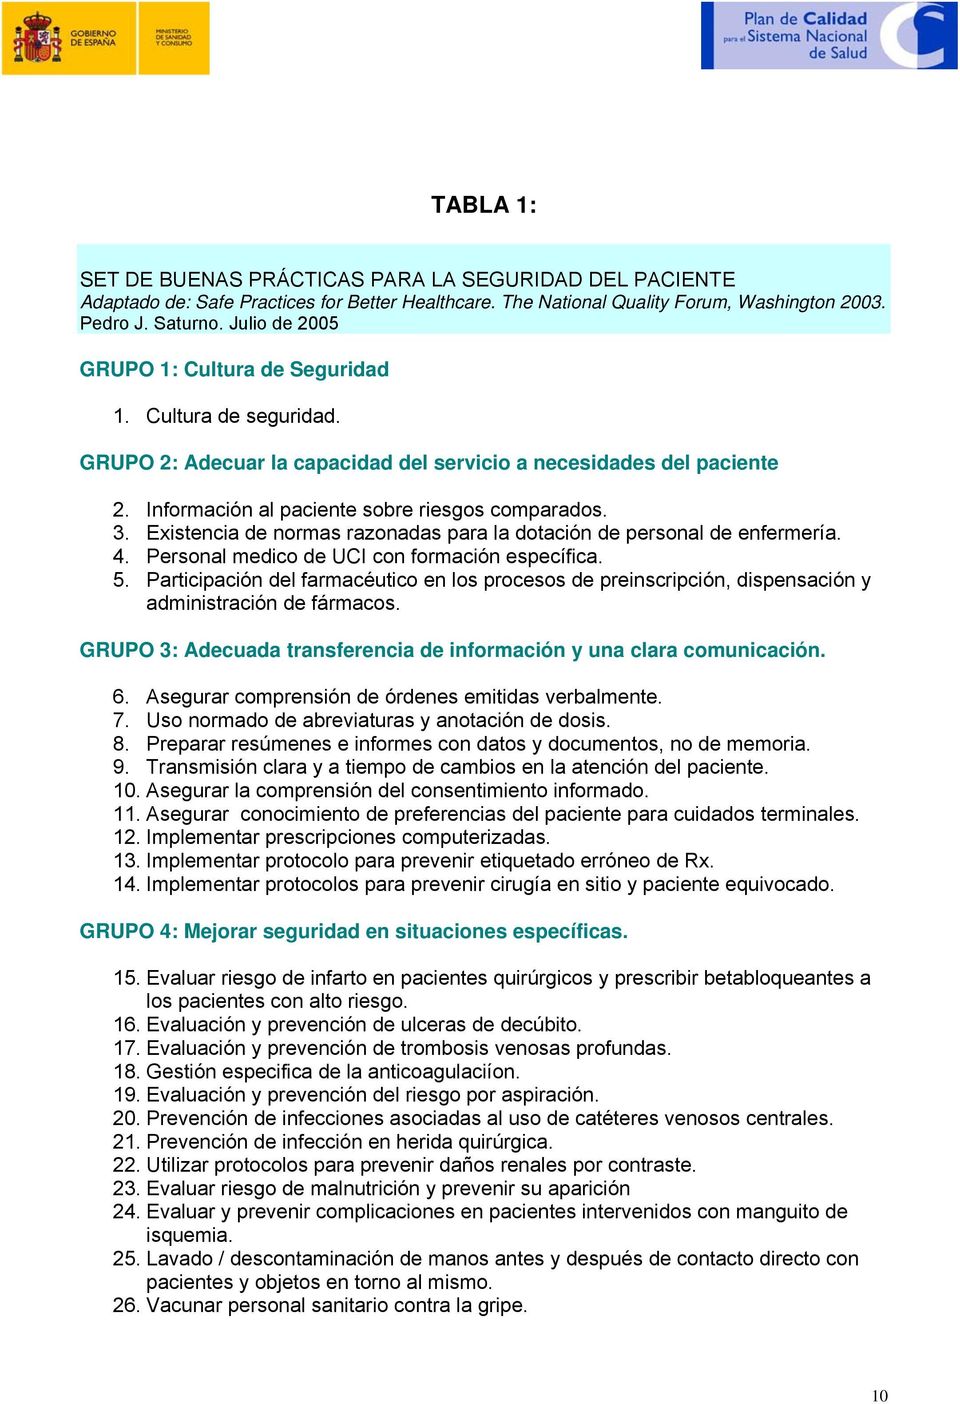 Existencia de normas razonadas para la dotación de personal de enfermería. 4. Personal medico de UCI con formación específica. 5.